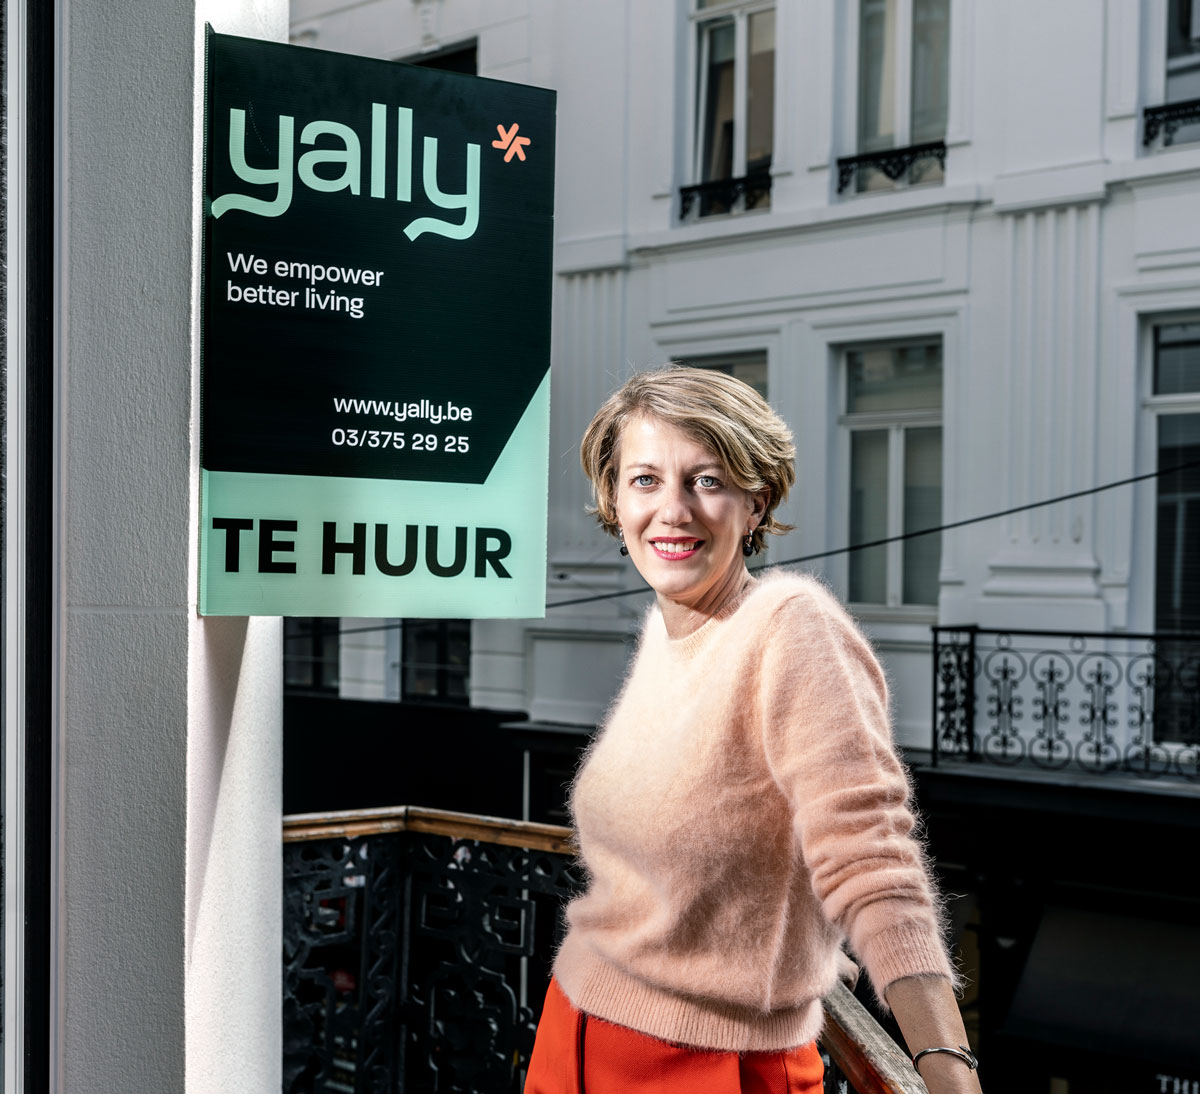 Yally s'engage à réduire le coût total du logement pour les locataires en améliorant l'immobilier existant